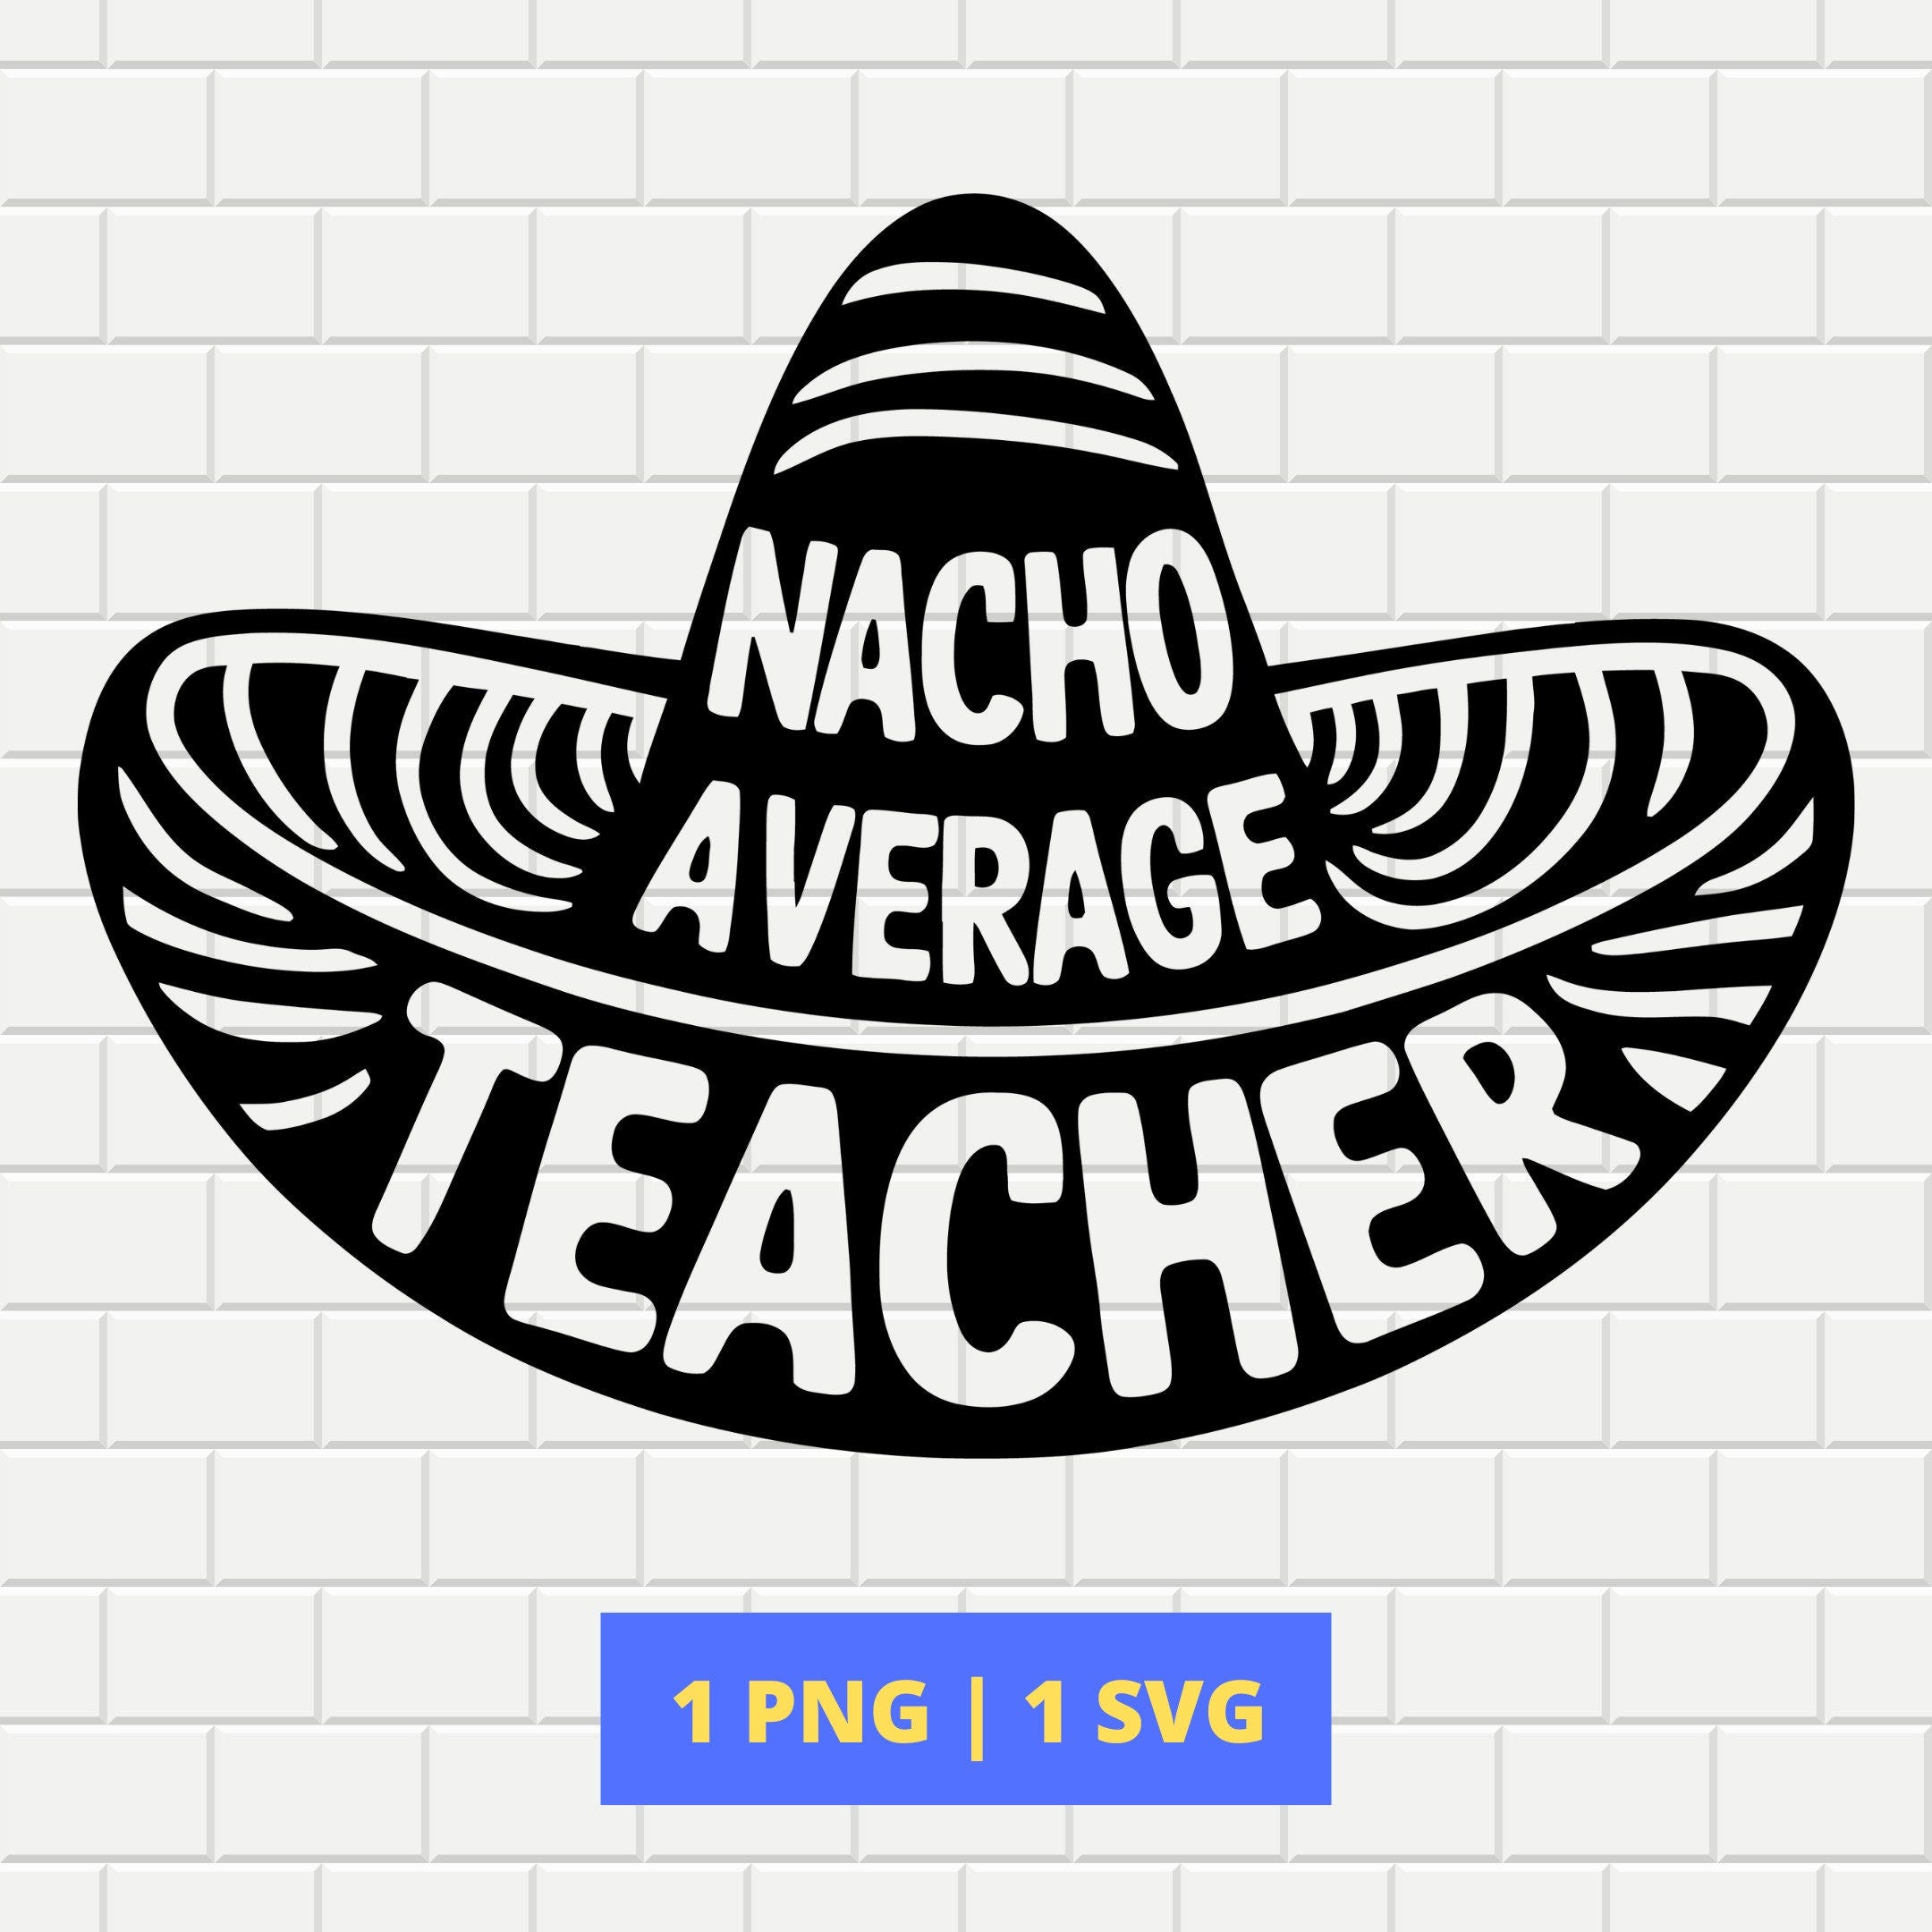 Nacho Average Teacher SVG, PNG